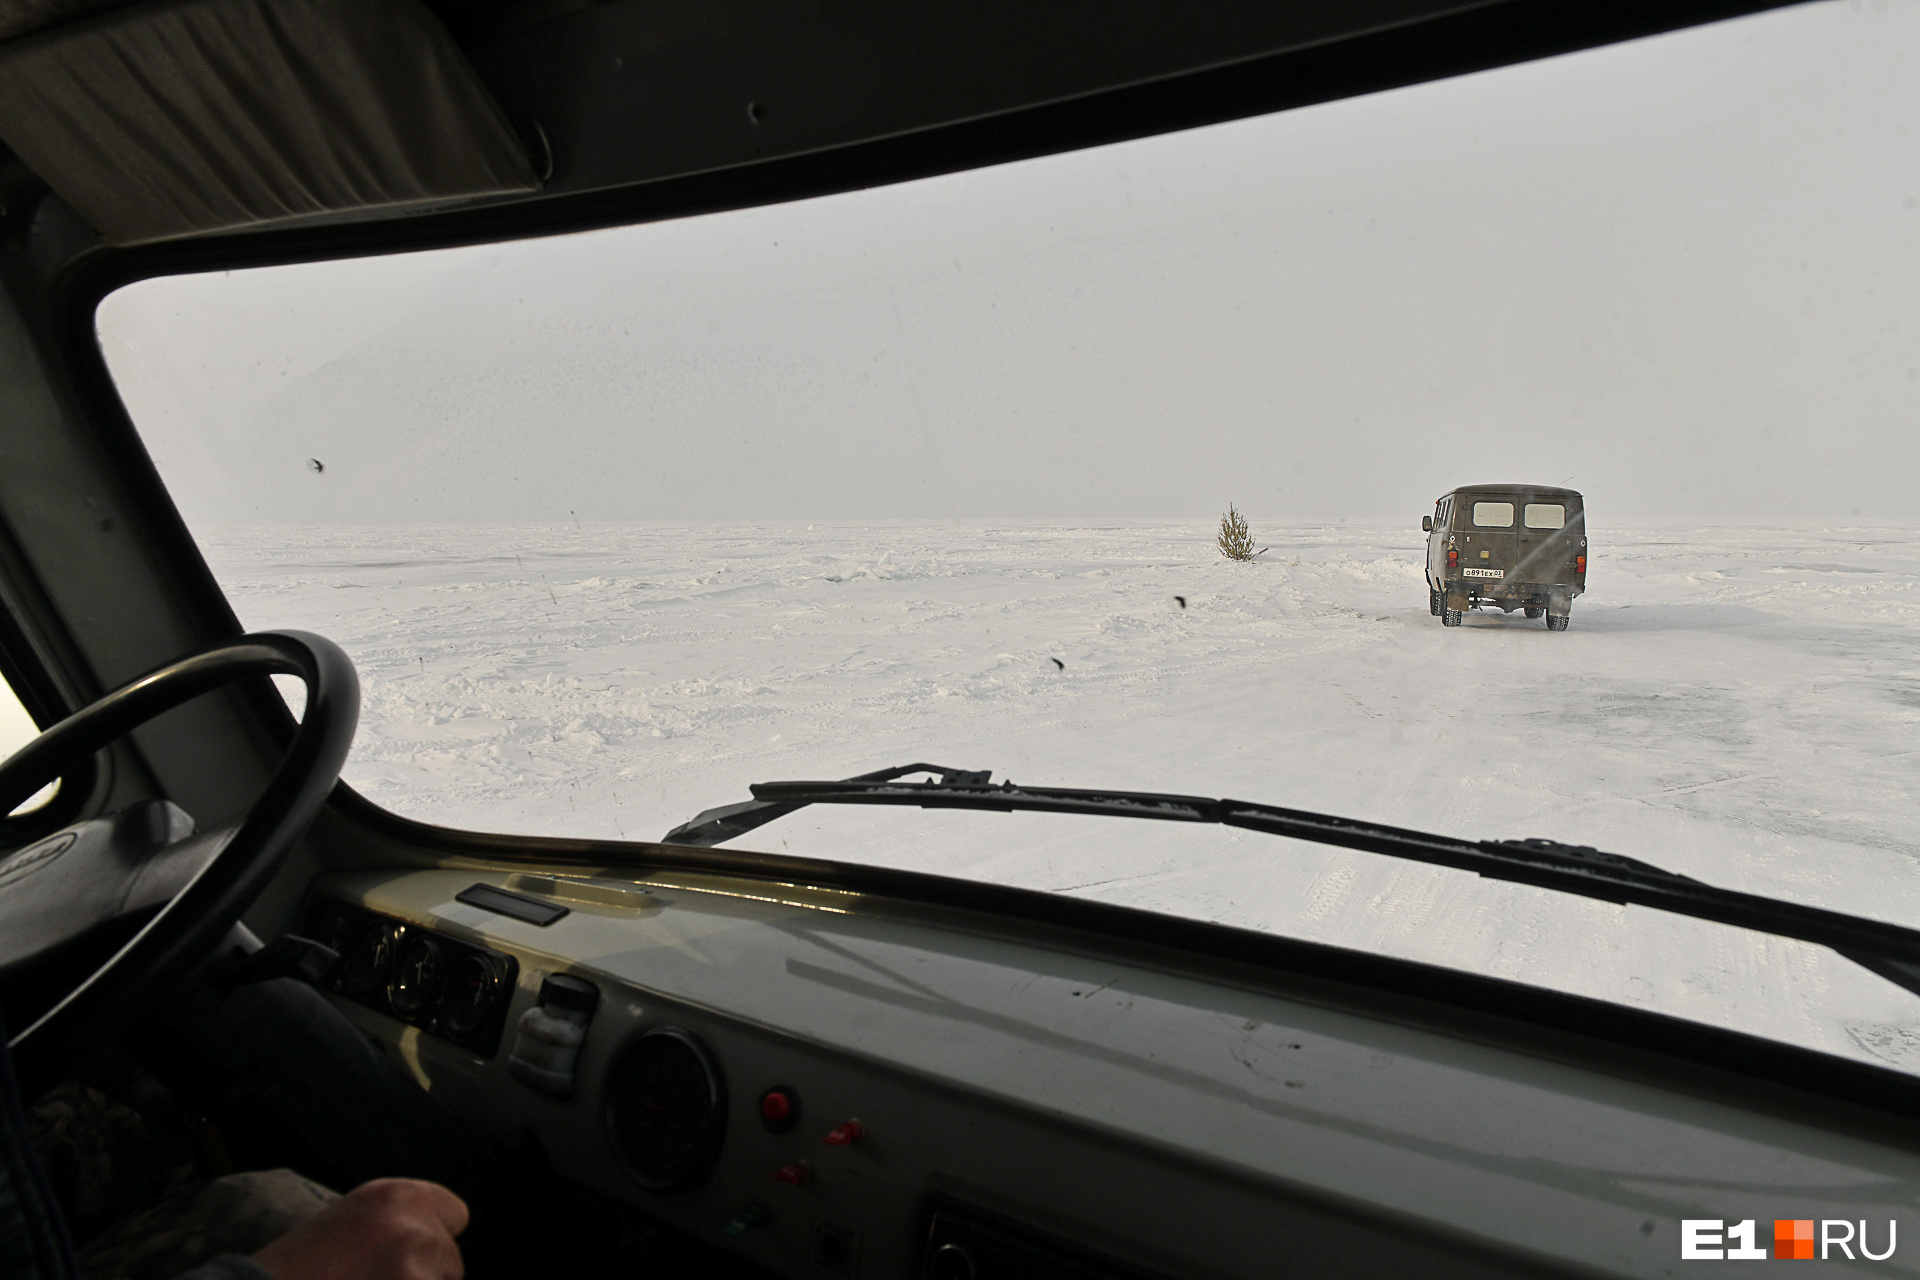 Дороги на Байкале размечены вешками — сосенками, воткнутыми прямо в лед для ориентира